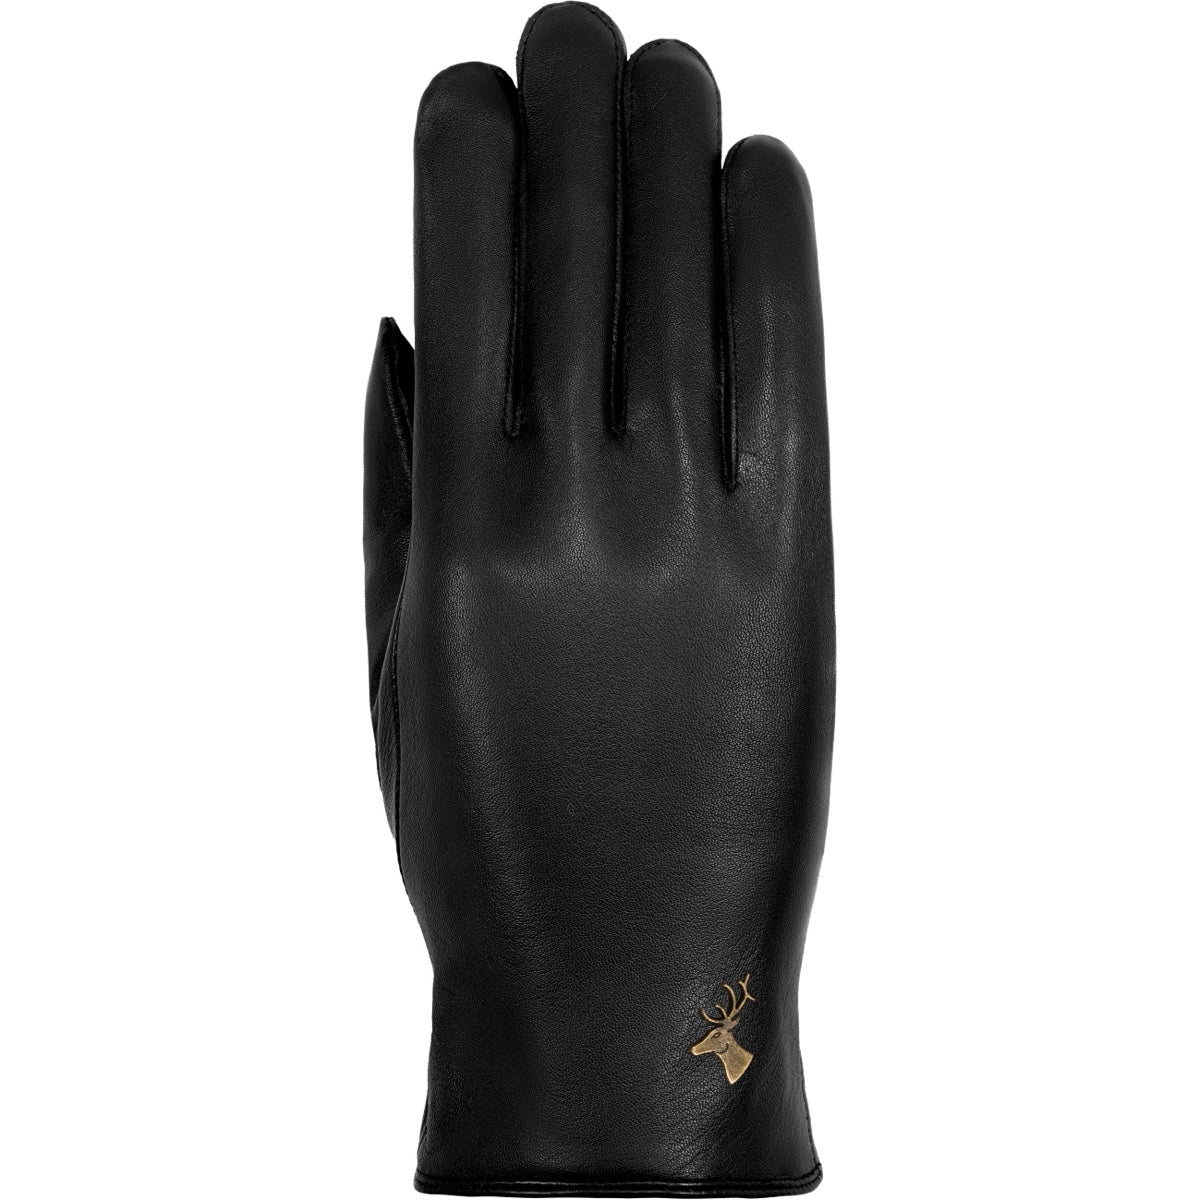 Les gants en cuir pour femme : l'accessoire tendance de l'hiver